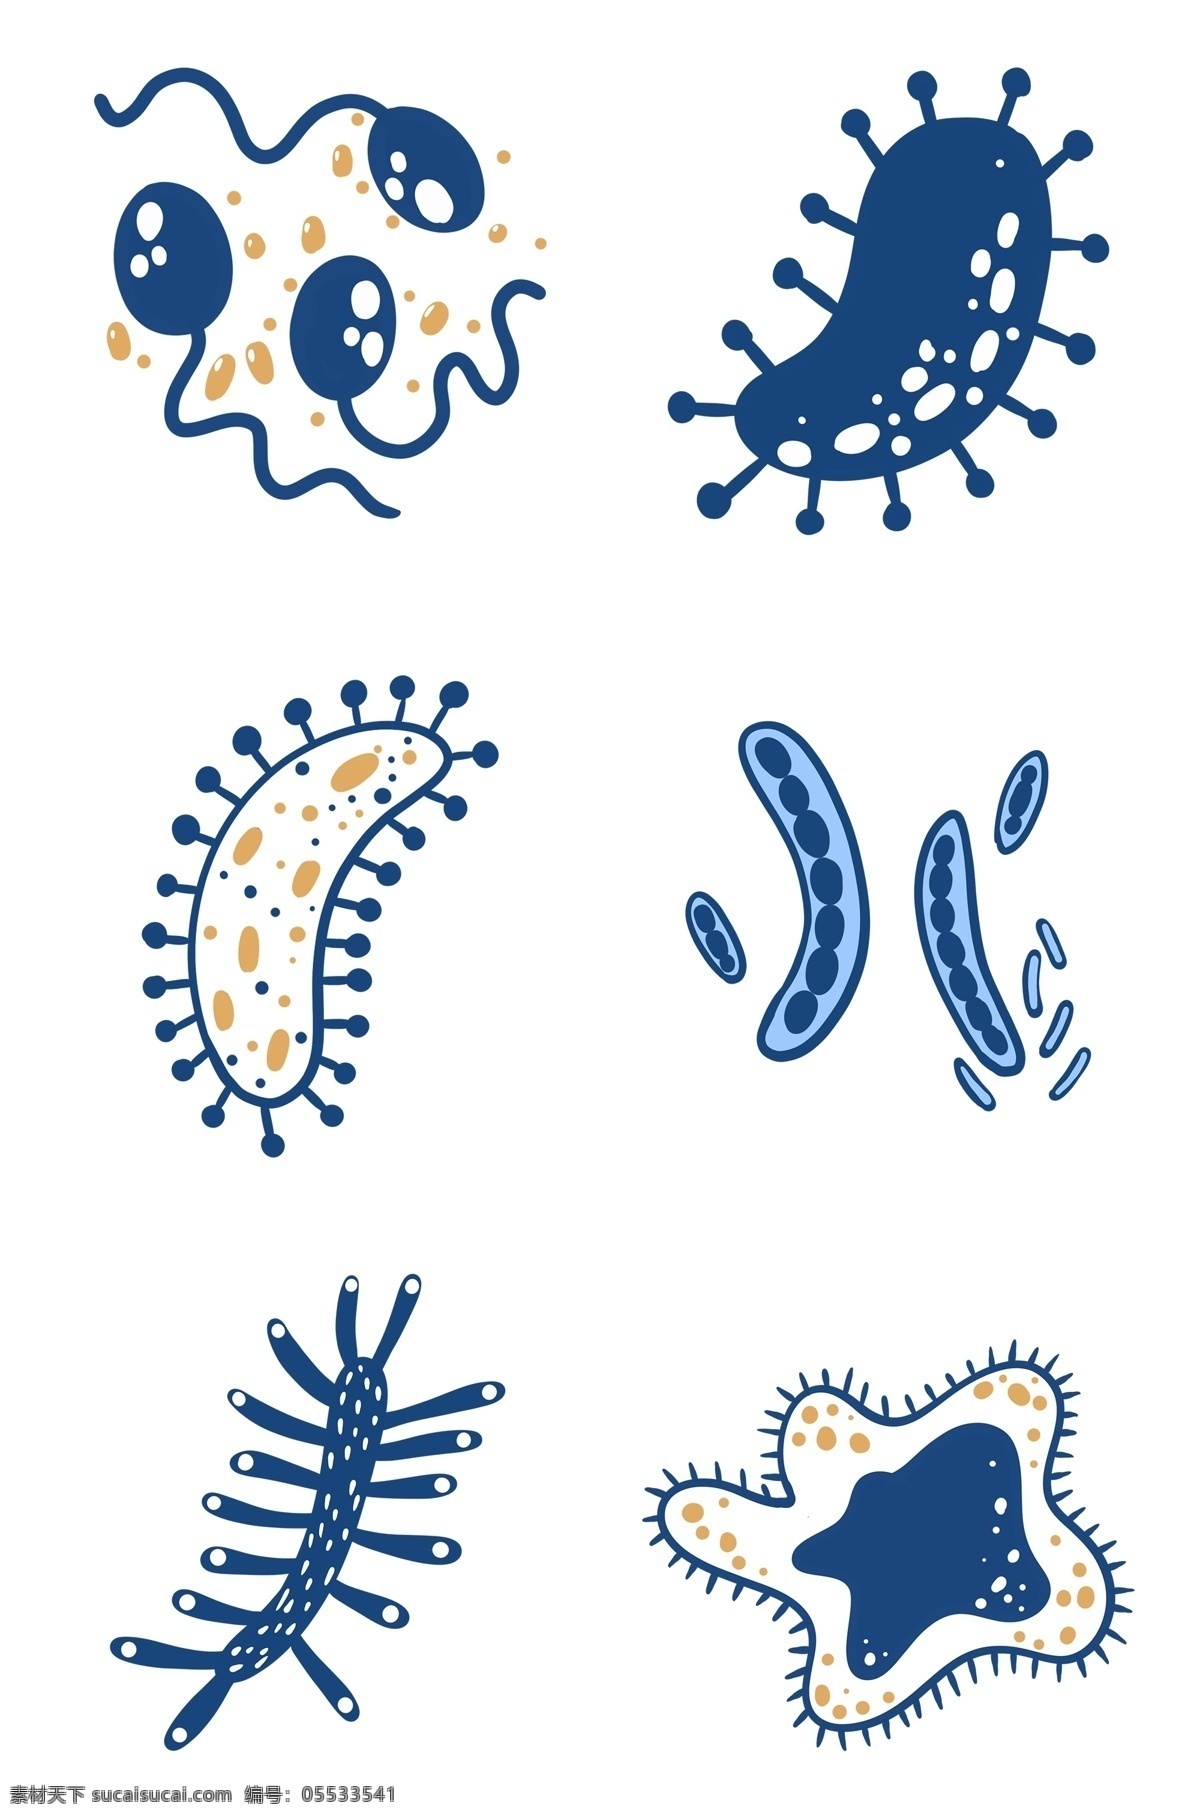 各种 细胞 细菌 组图 免 抠 病毒 卡通细菌 扁平细菌 卡通细胞 扁平细胞 触手 触角 杀菌 微生物 疾病 健康 仿真细菌 菌类 生物工程 生物